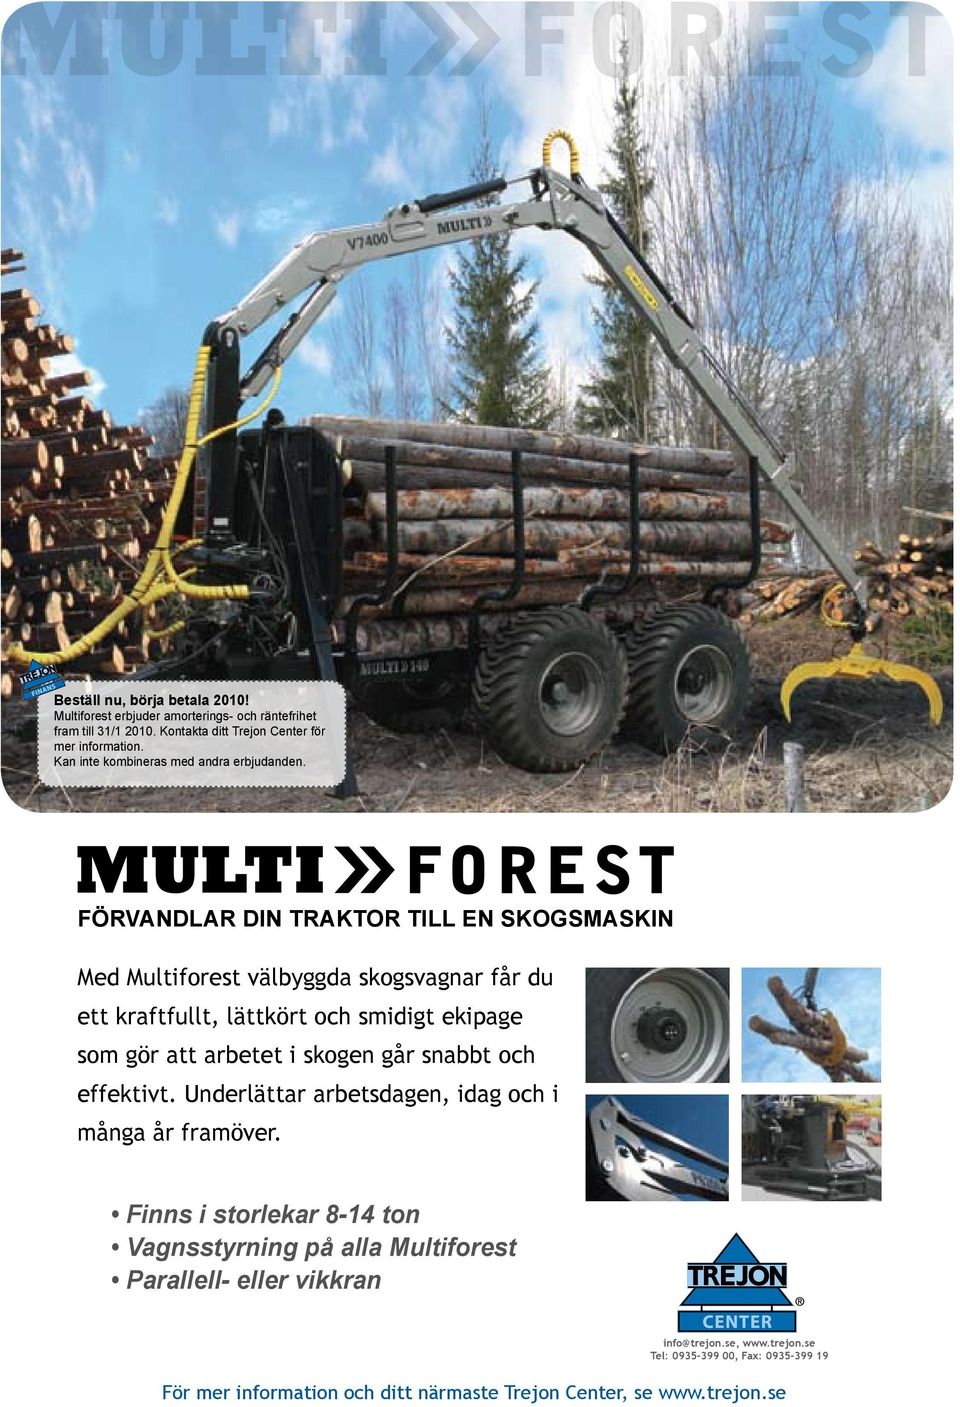 FÖRVANDLAR DIN TRAKTOR TILL EN SKOGSMASKIN Med Multiforest välbyggda skogsvagnar får du ett kraftfullt, lättkört och smidigt ekipage som gör att arbetet i skogen